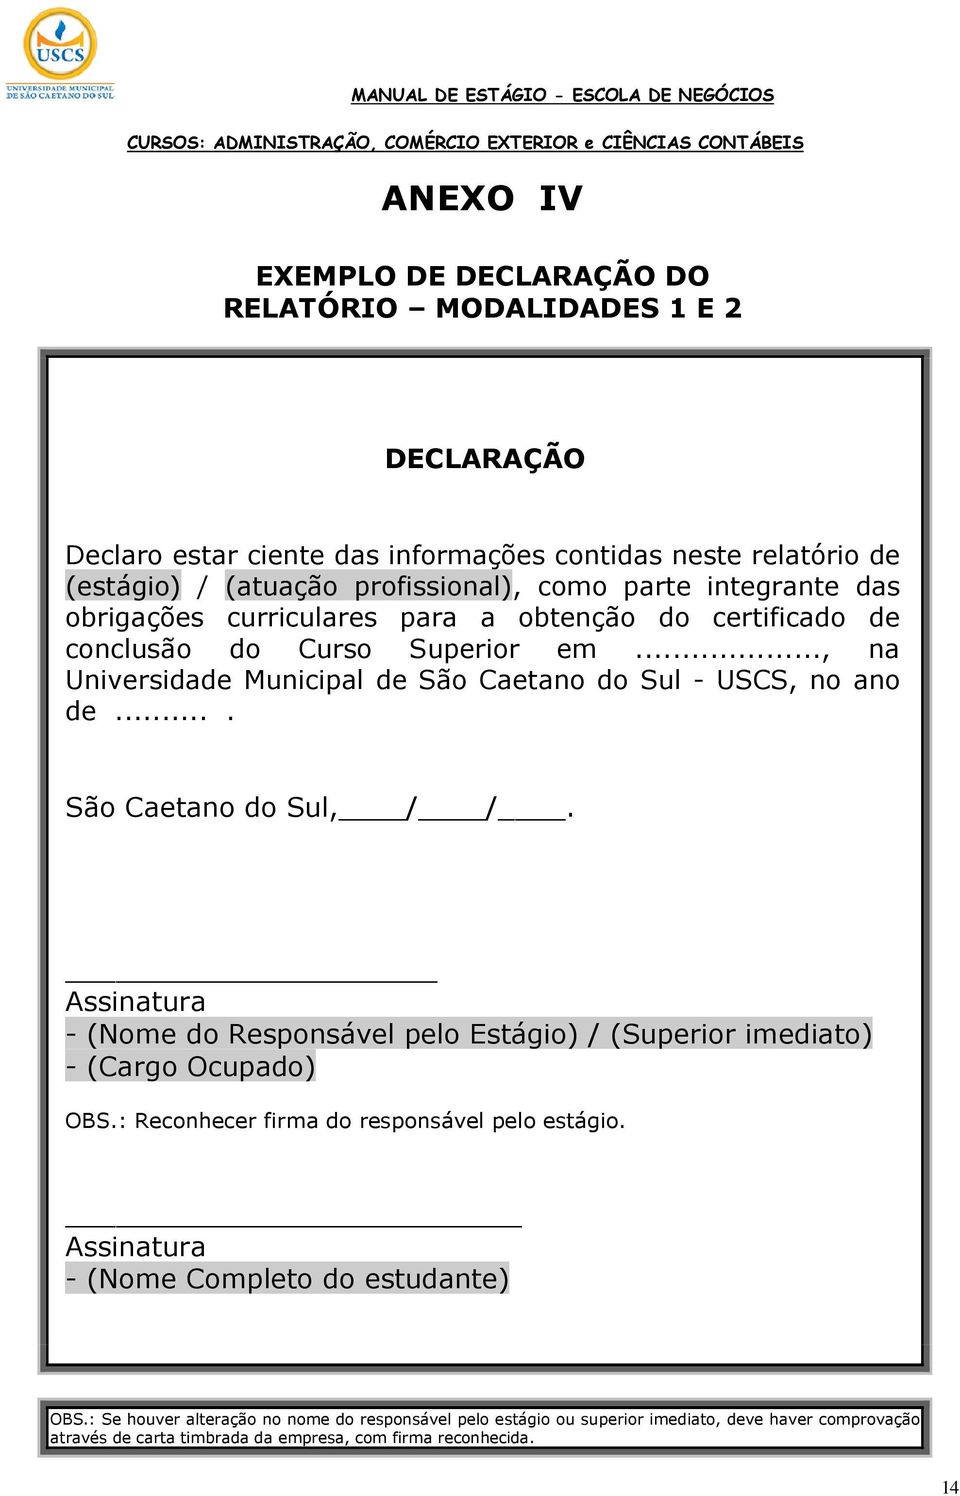 ... São Caetano do Sul, / /. Assinatura - (Nome do Responsável pelo Estágio) / (Superior imediato) - (Cargo Ocupado) OBS.: Reconhecer firma do responsável pelo estágio.